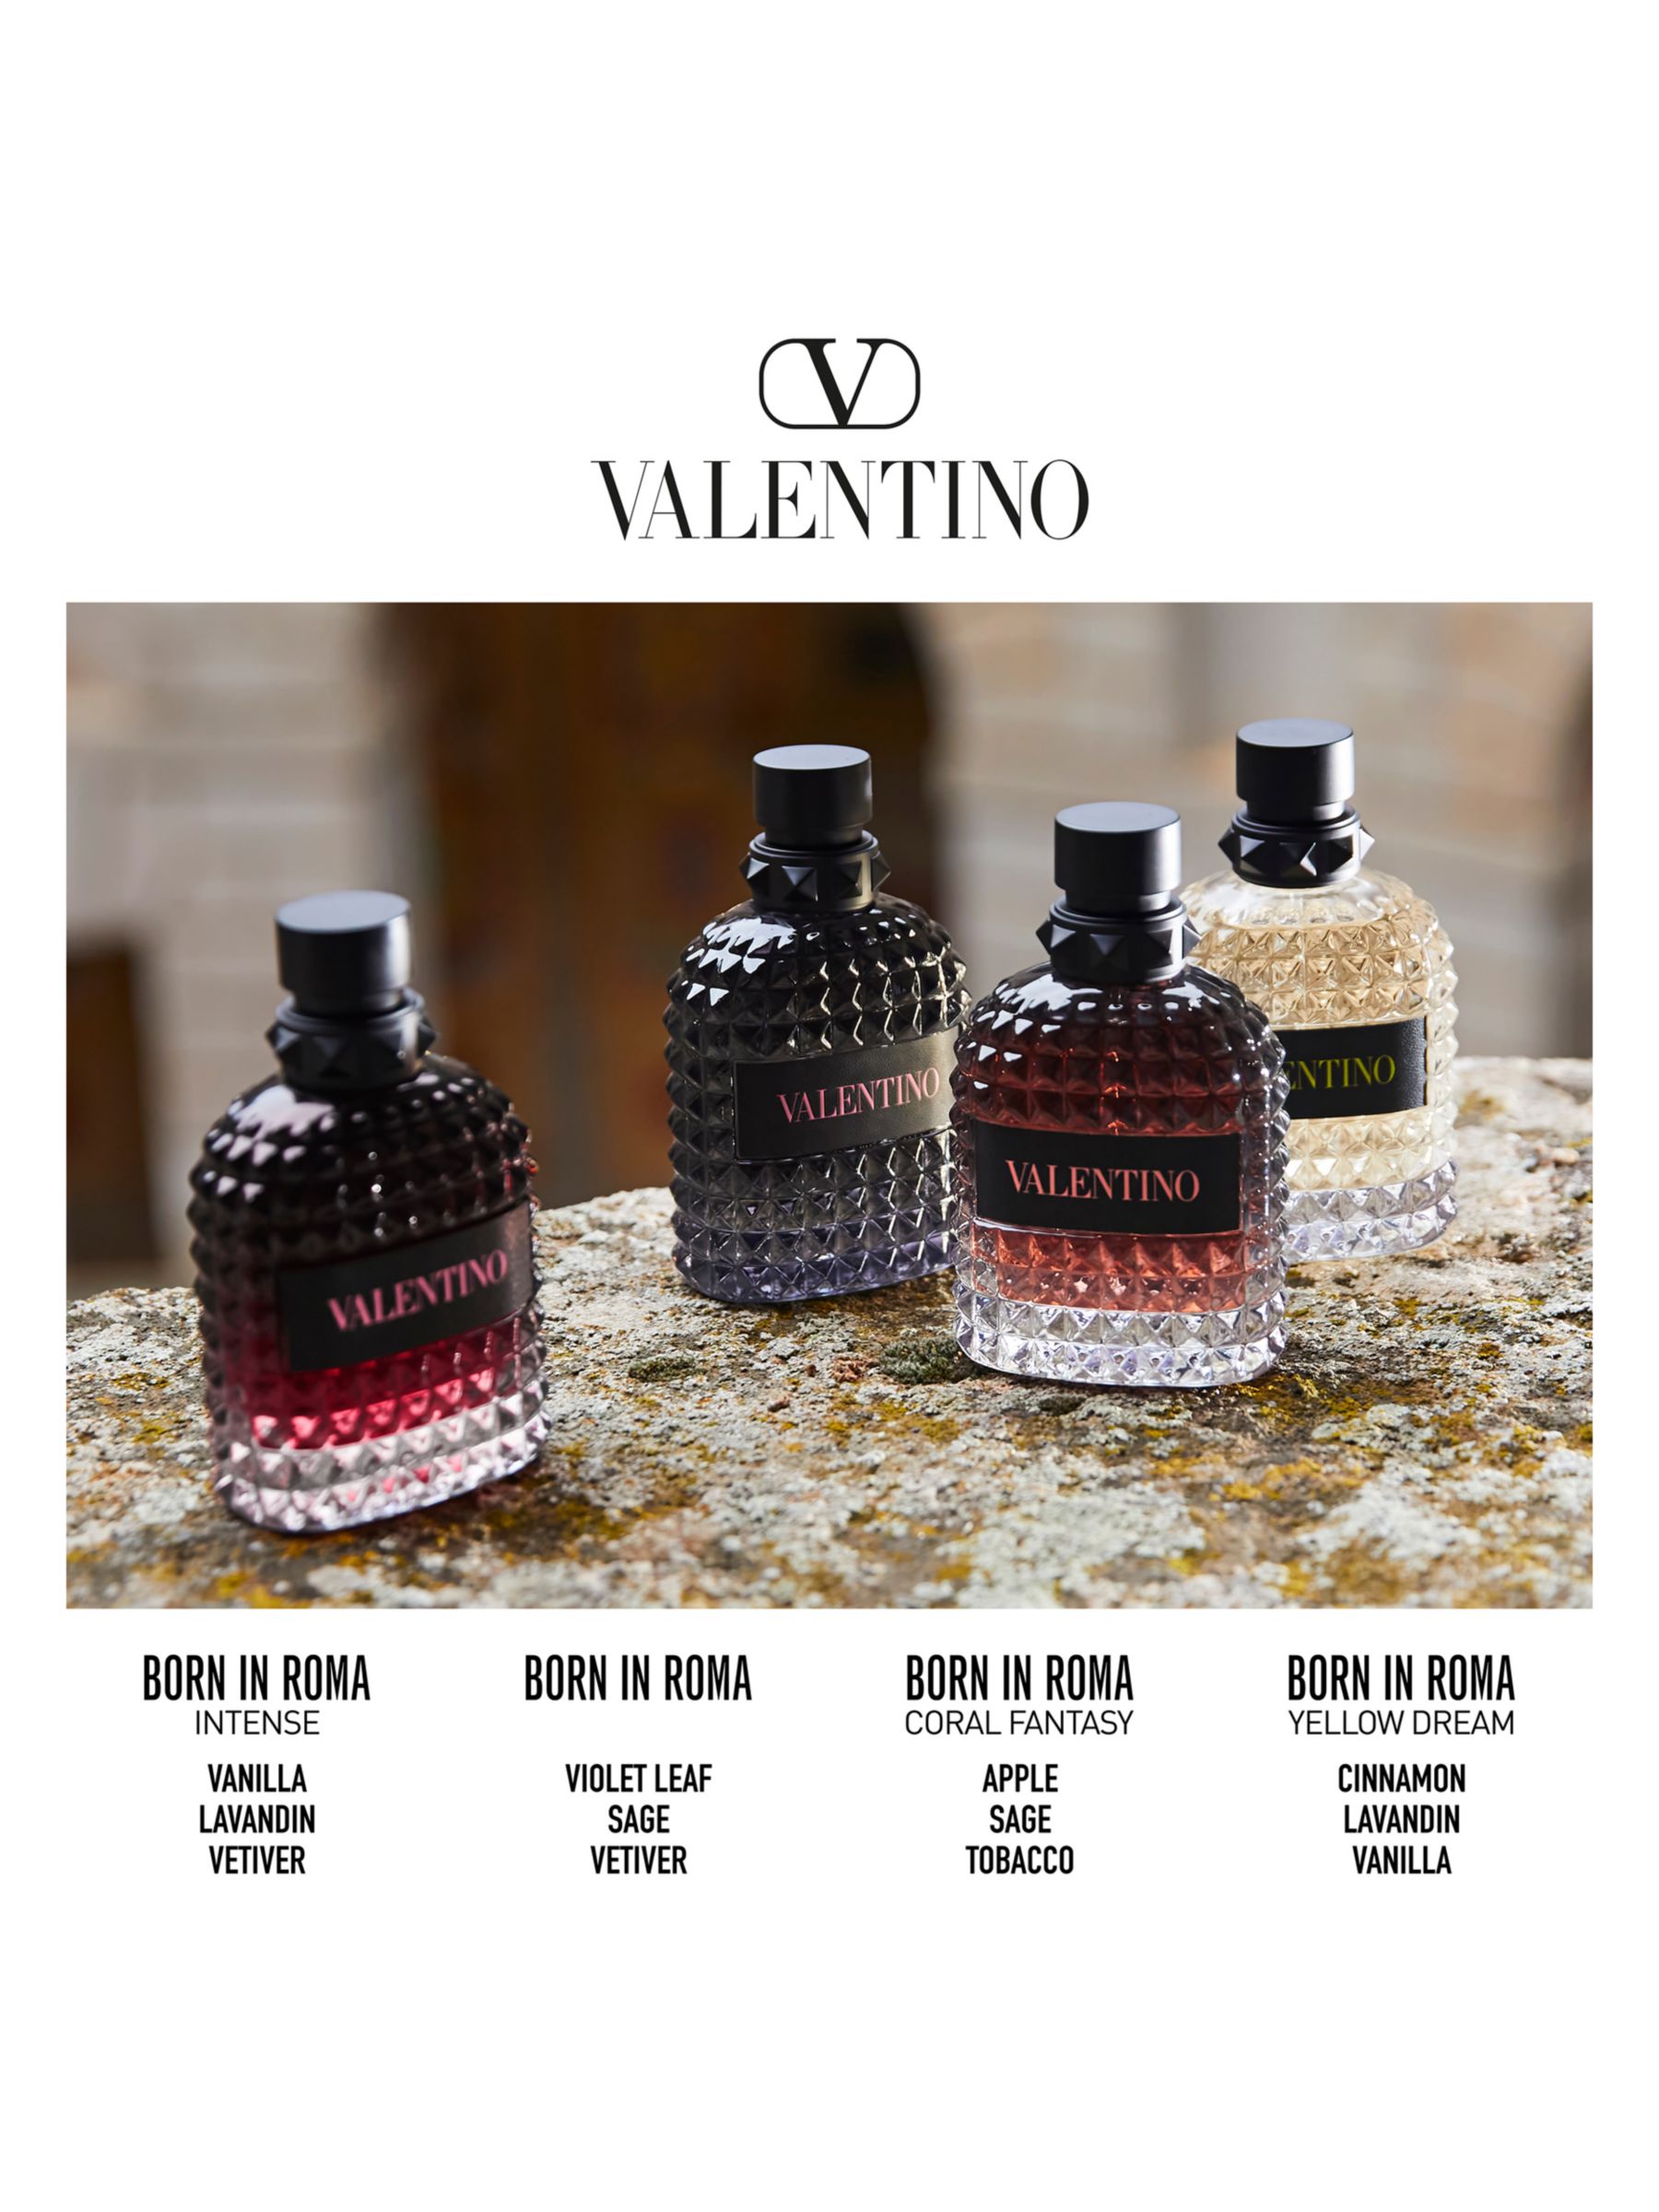 Valentino Born In Roma Uomo Eau de Parfum Intense, 50ml